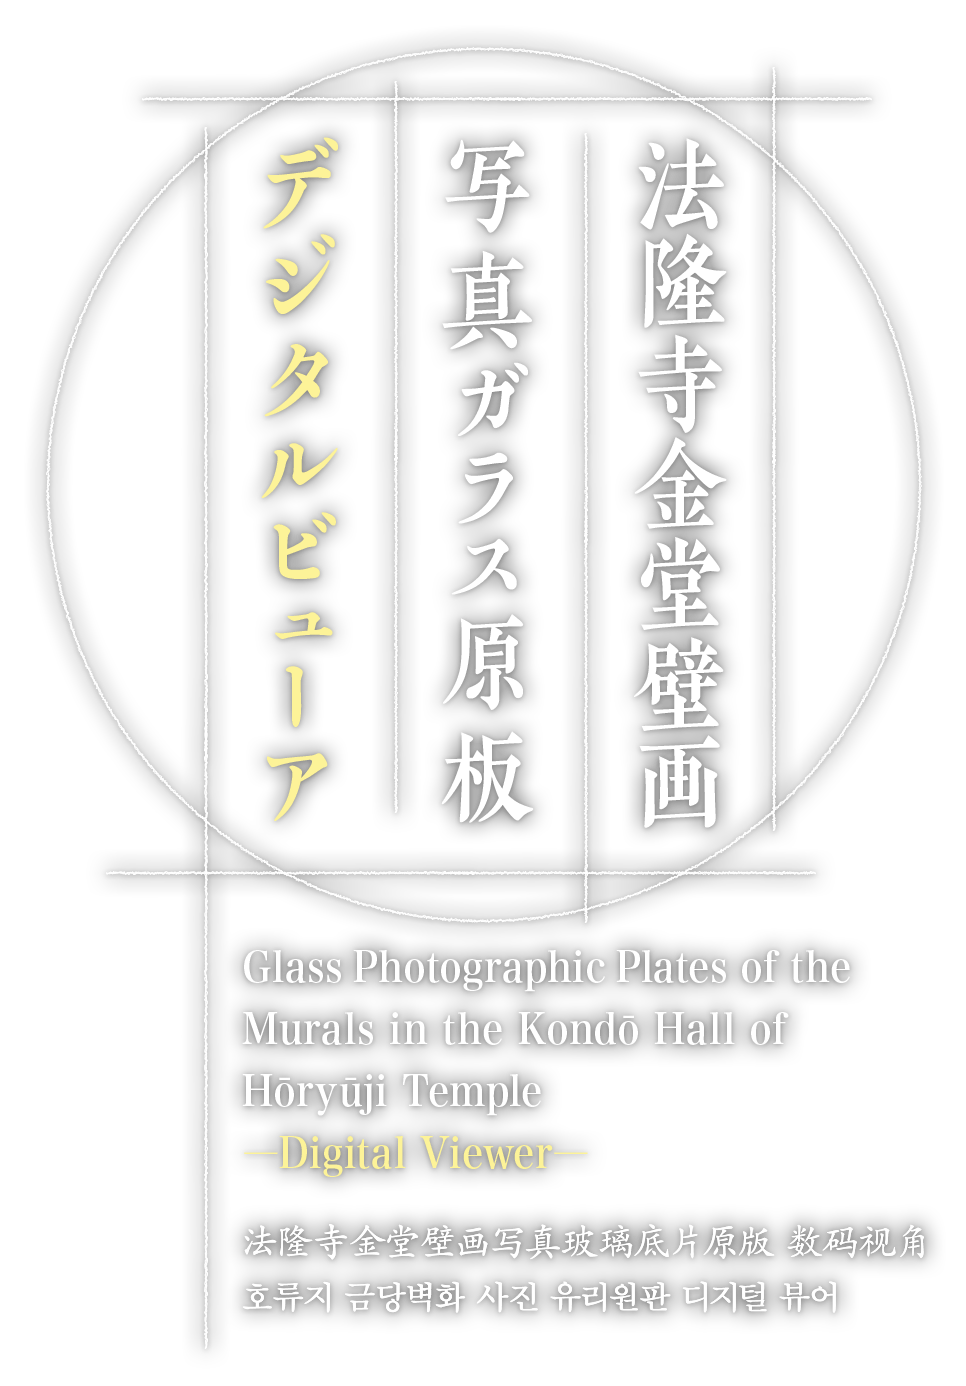 法隆寺金堂壁画 写真ガラス原板 デジタルビューア Glass Photographic Plates of the Murals in the Kondō Hall of Hōryūji Temple ―Digital Viewer―